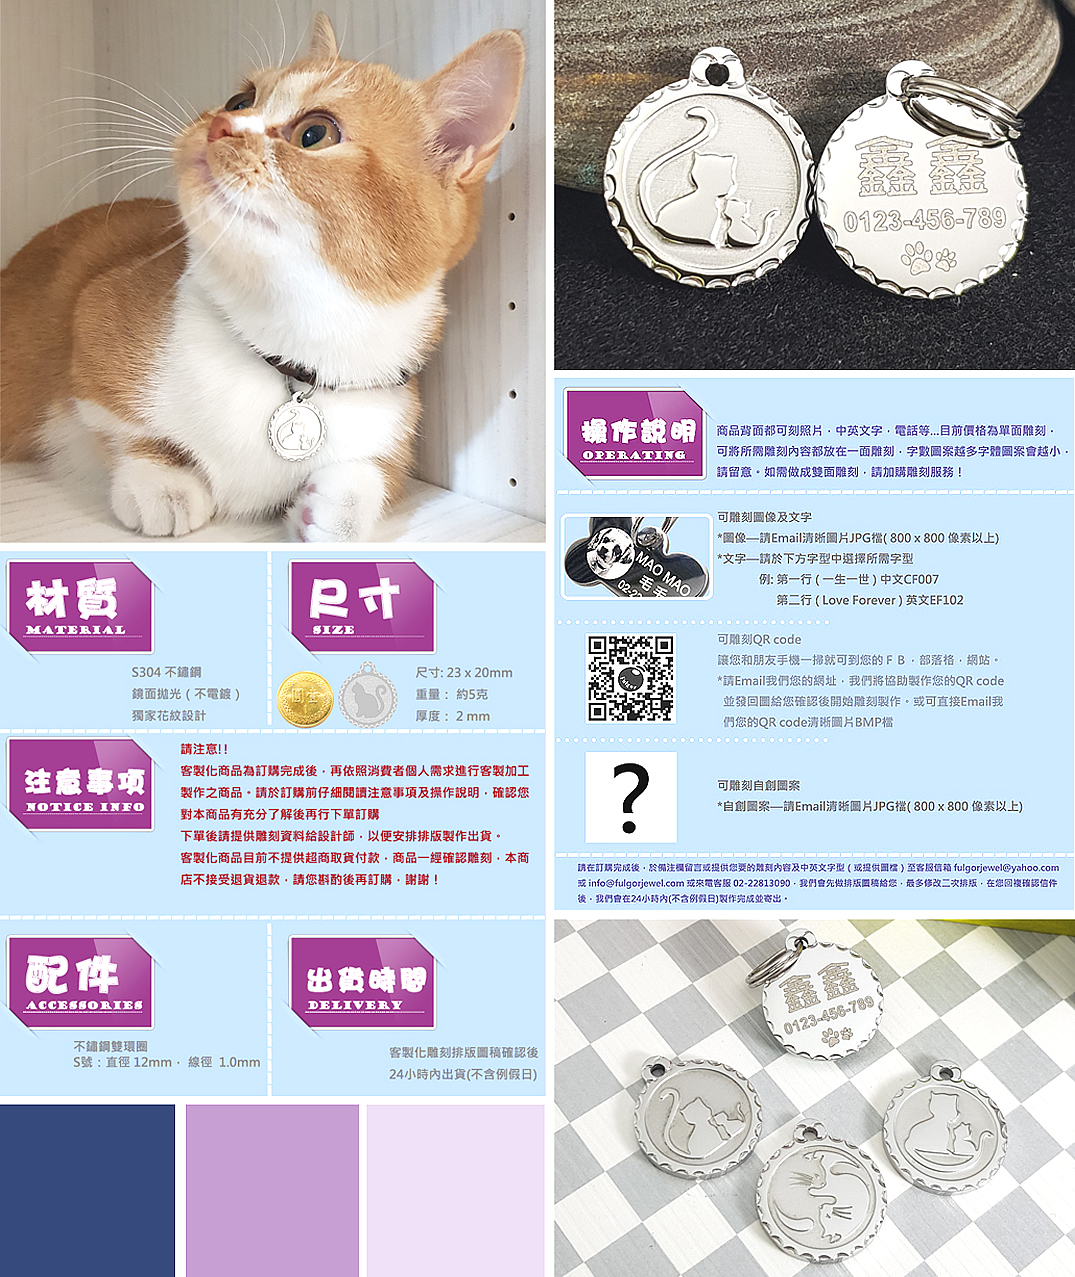 客製貓咪姓名牌吊牌雙貓貓牌-富狗客製-Steel-Engraving-Crown-and-Paw-Design-pet id tag-FulgorJewel-Cat-Tag-info.jpg